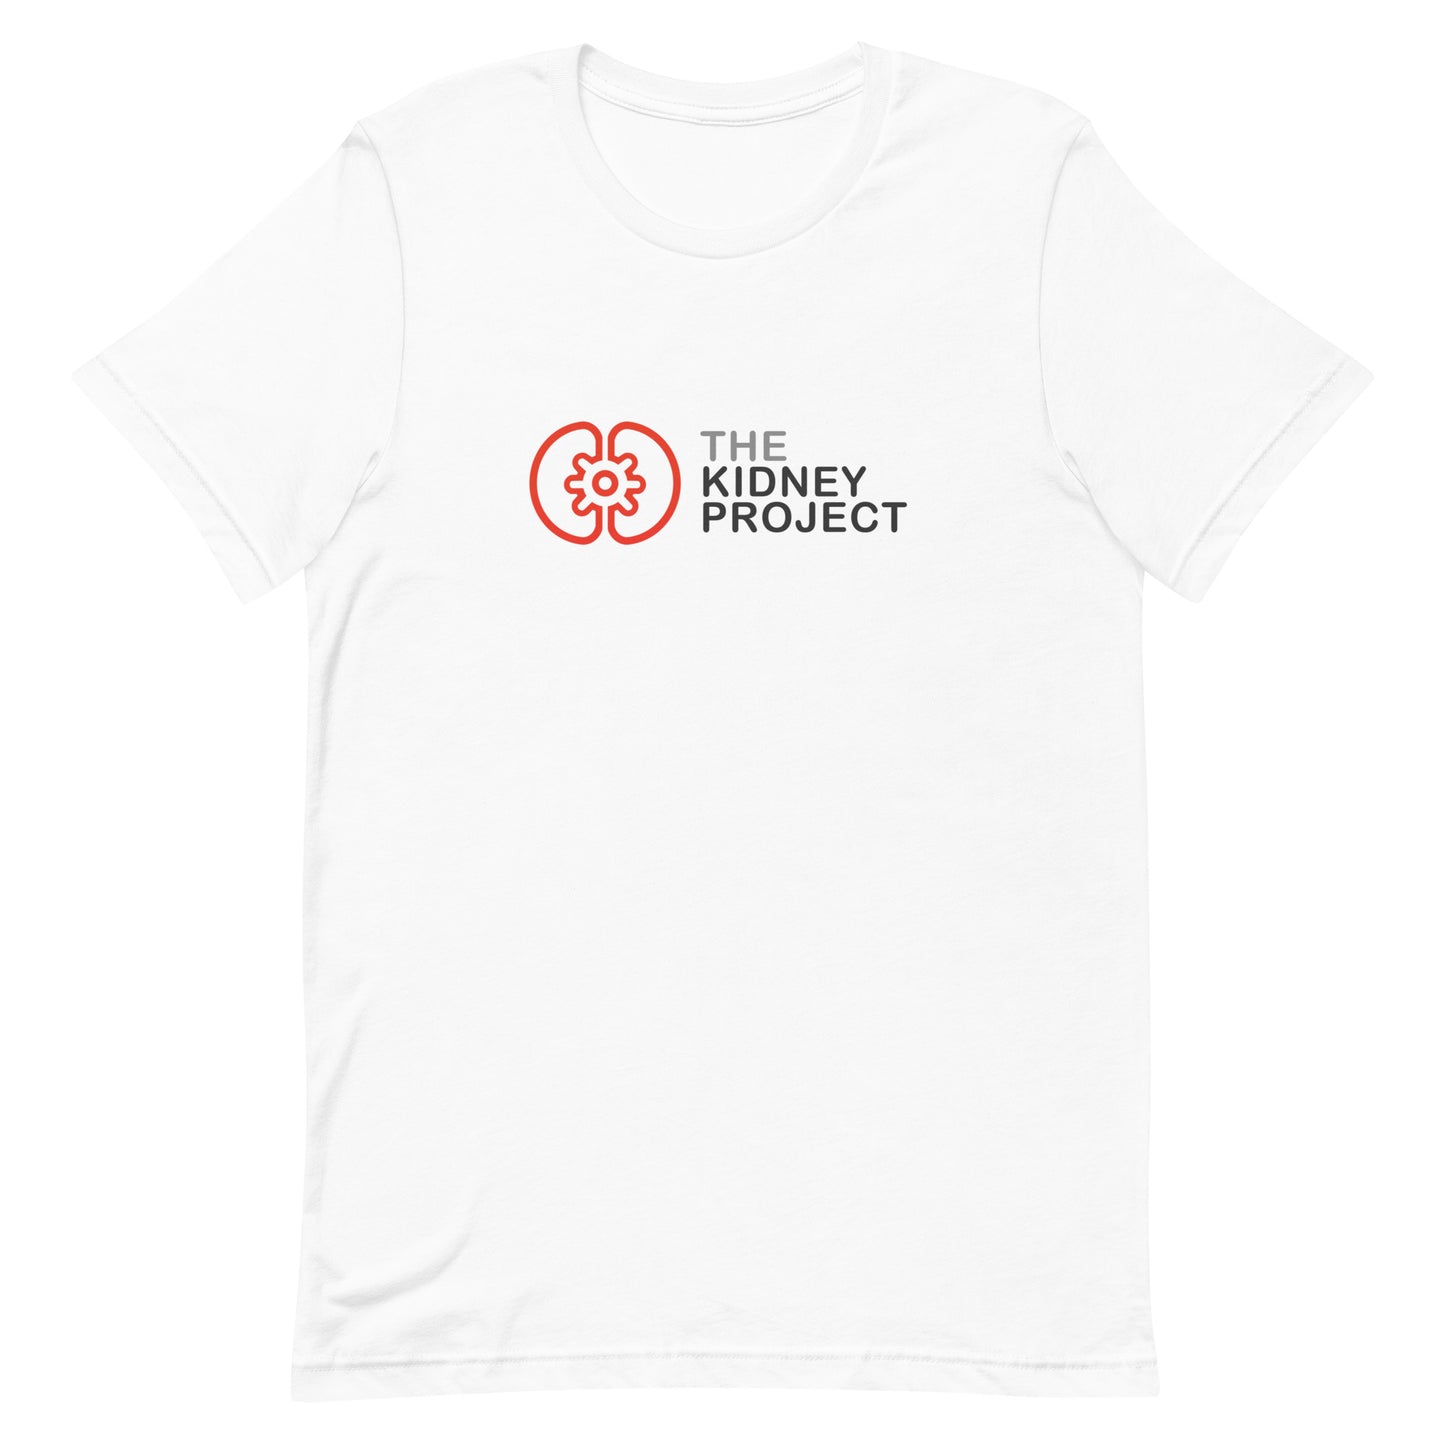 Camiseta con logotipo original de The Kidney Project (solo en blanco)